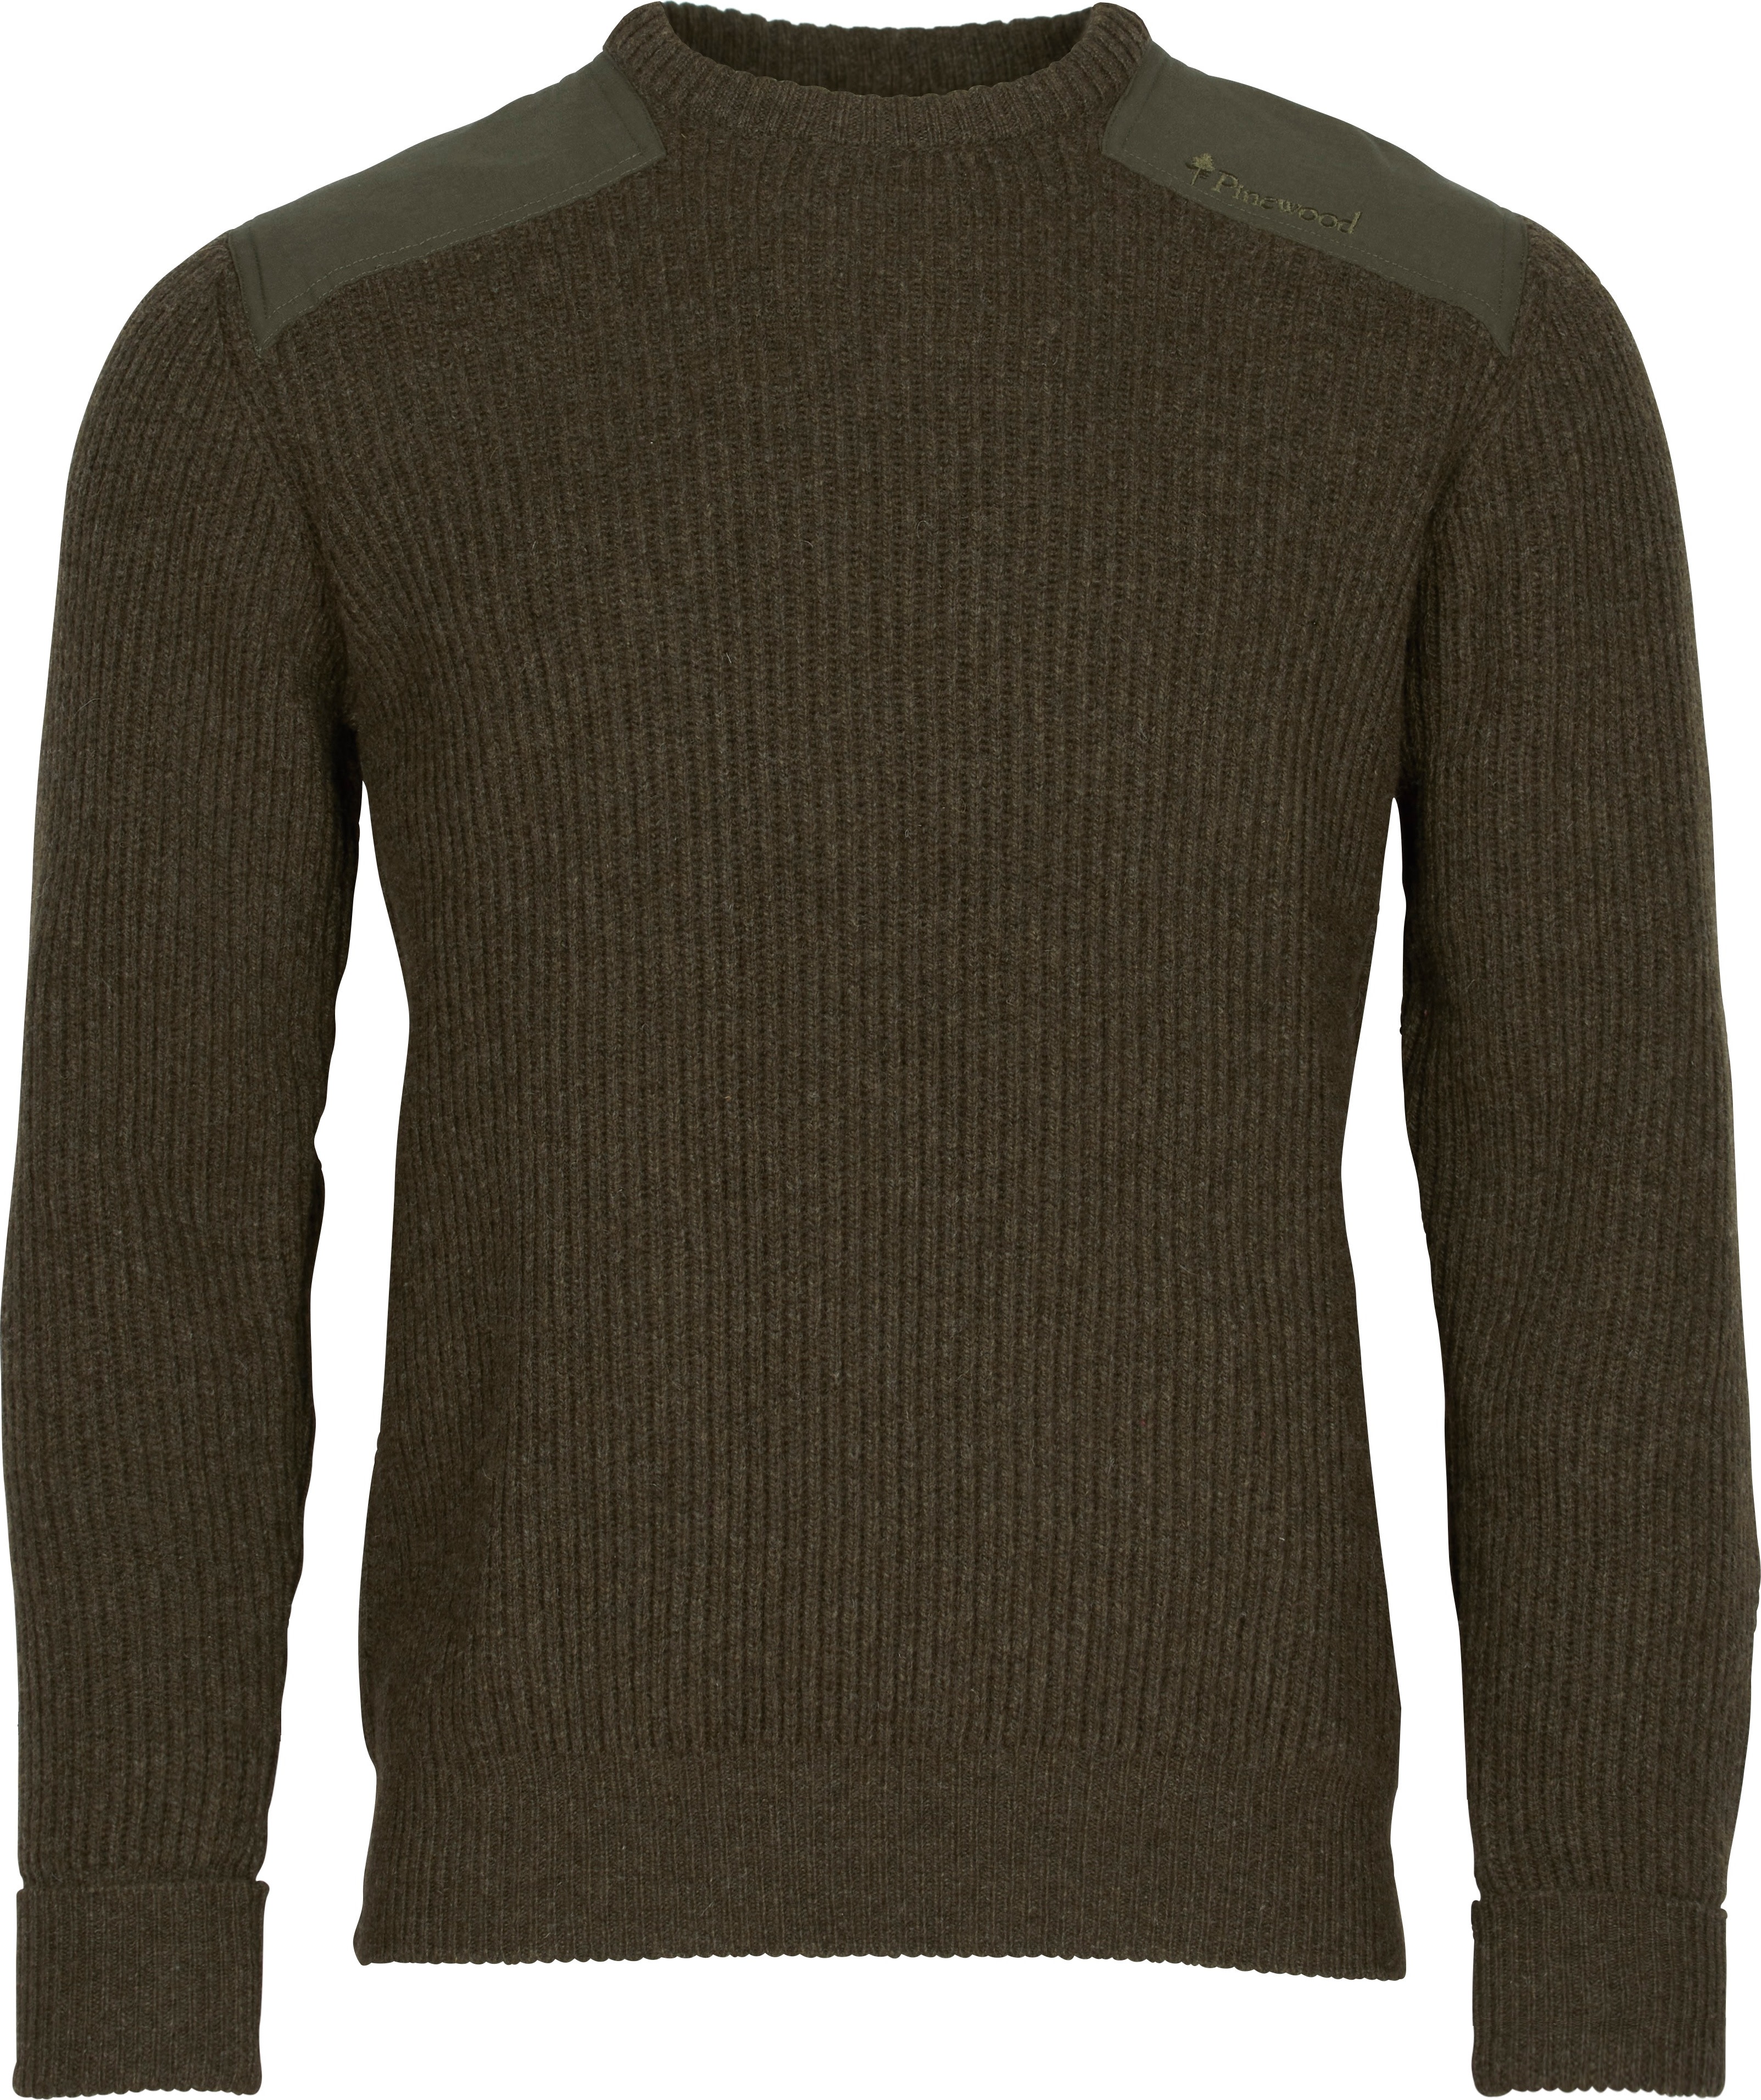 Men's Lappland Rough Sweater Mossgreen Mel